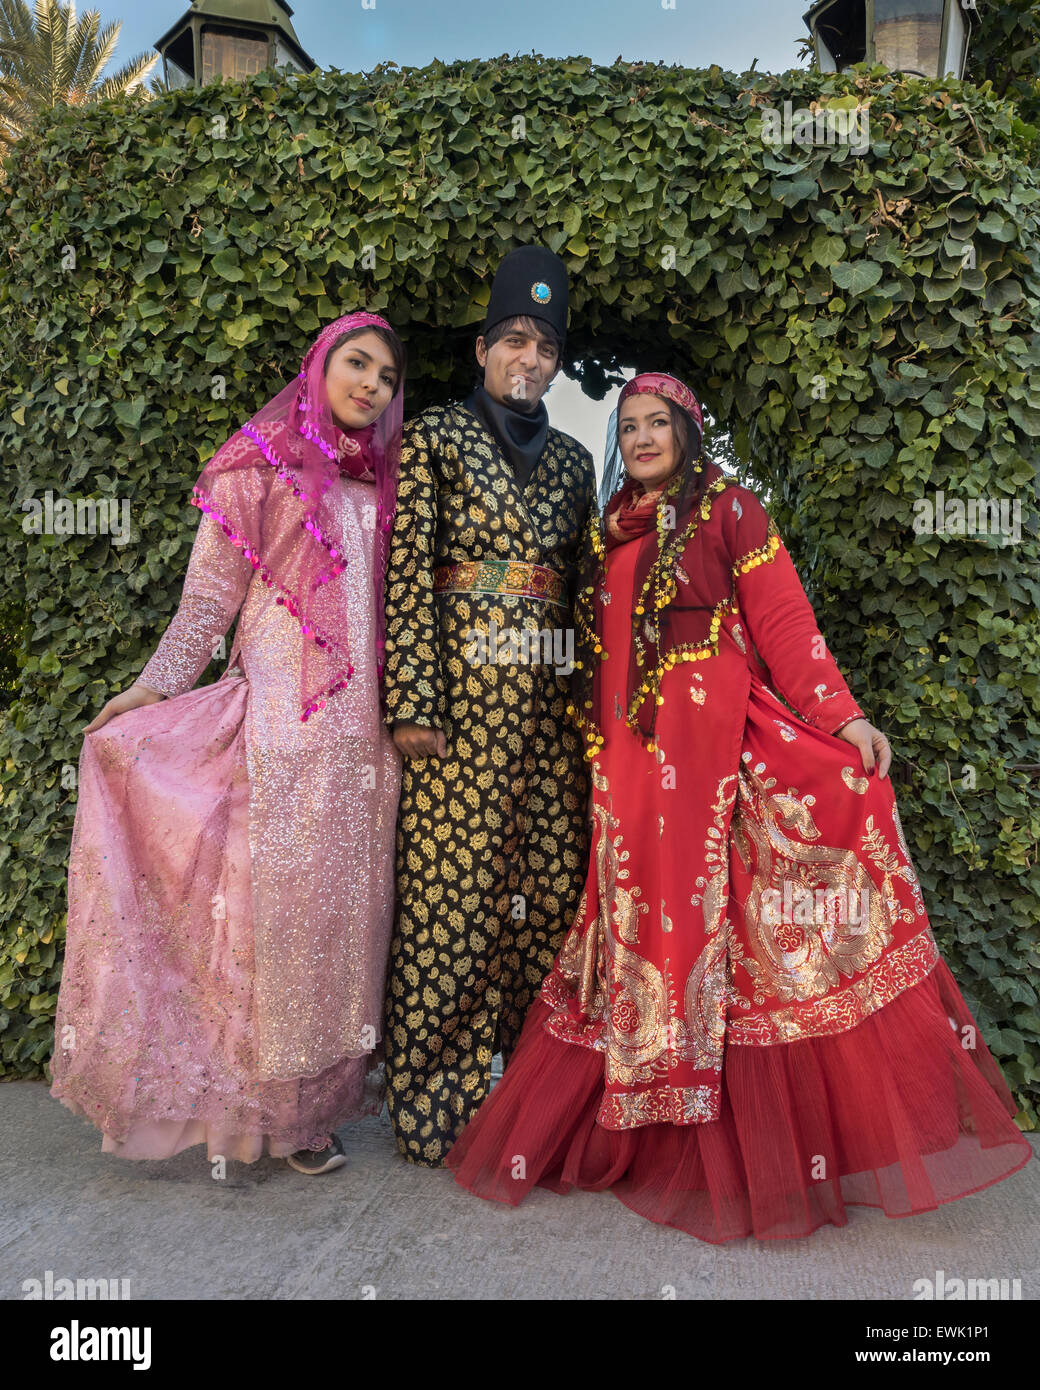 Traditionell gekleideten Trio, Zinat Stockfoto